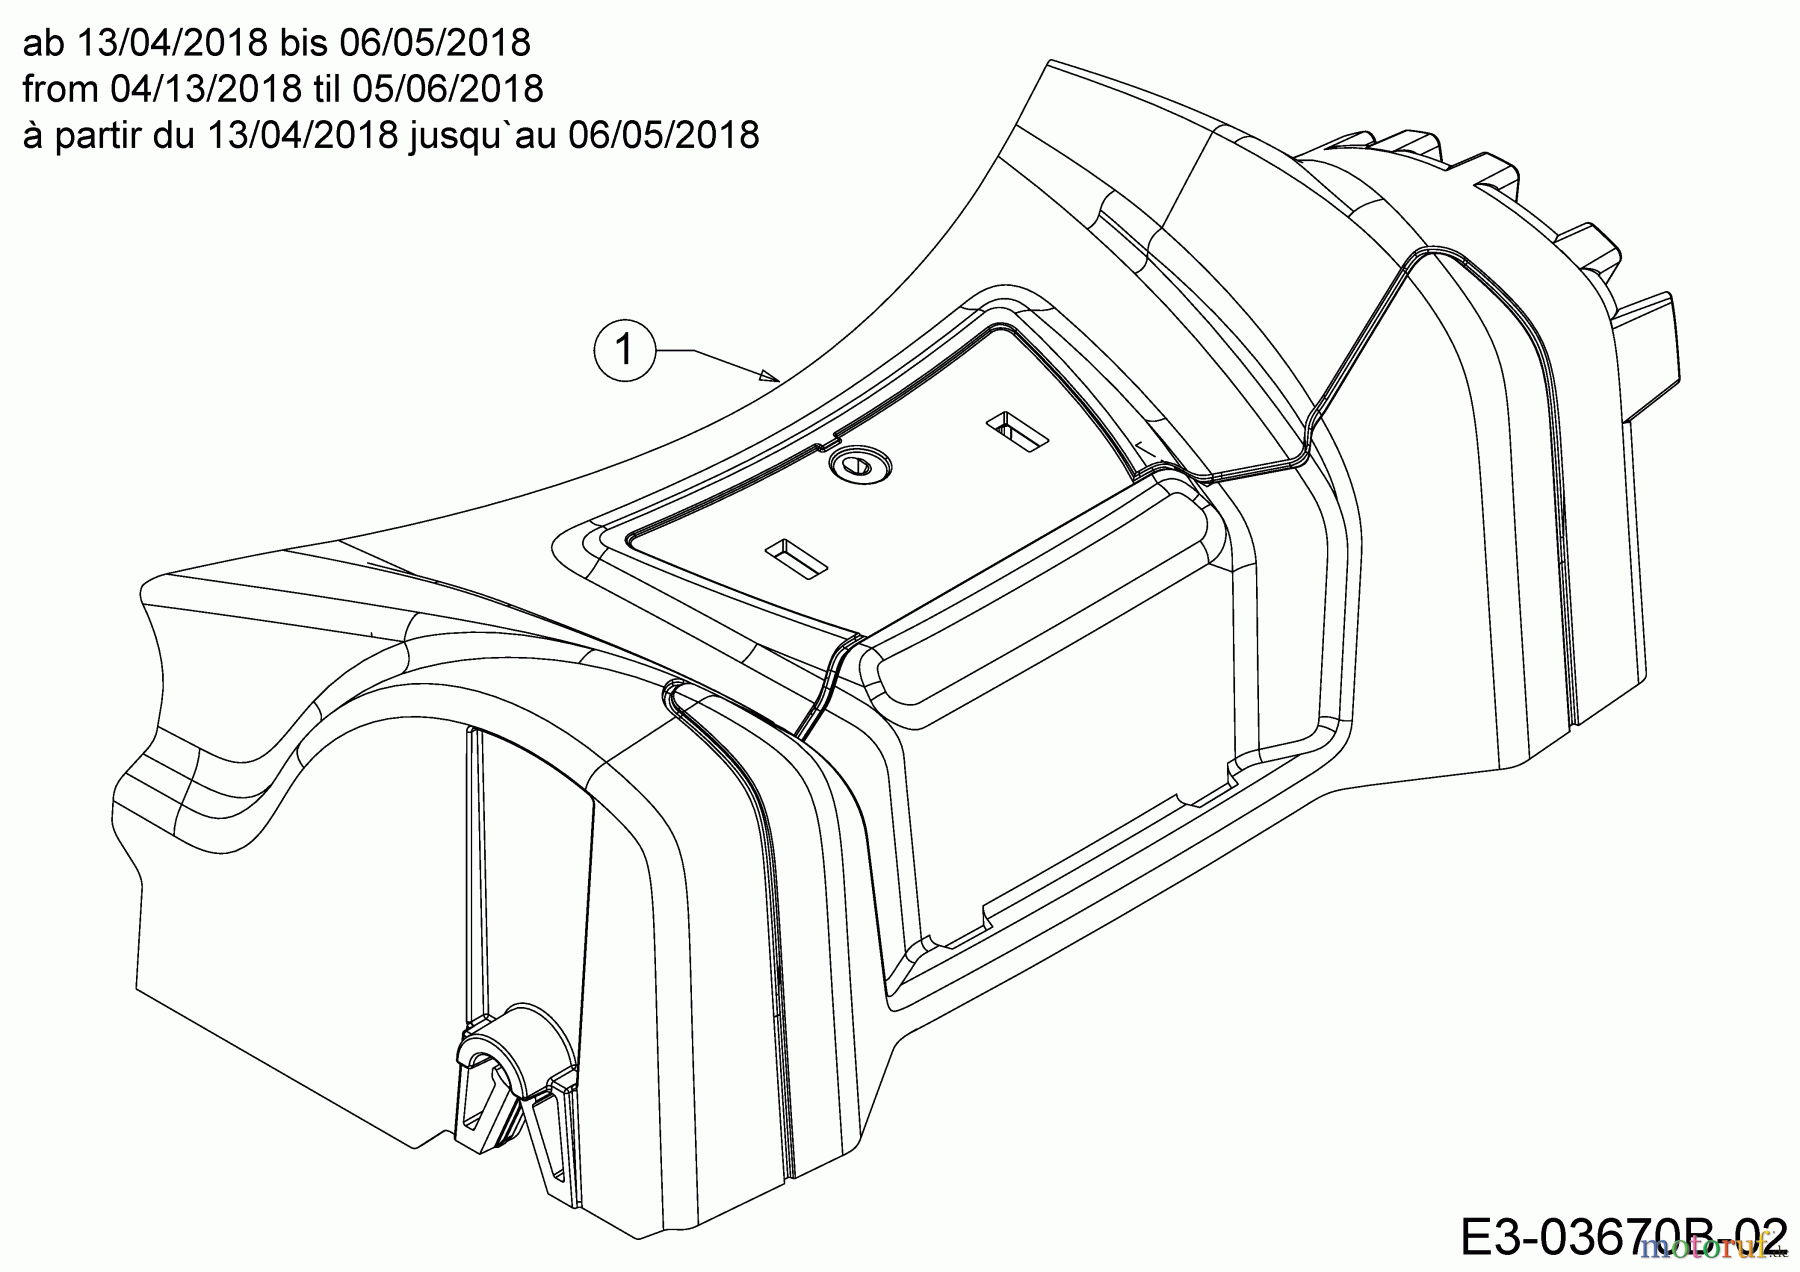  MTD Motormäher P 46 T 11D-TASJ600  (2018) Abdeckung Vorderachse ab 13/04/2018 bis 06/05/2018